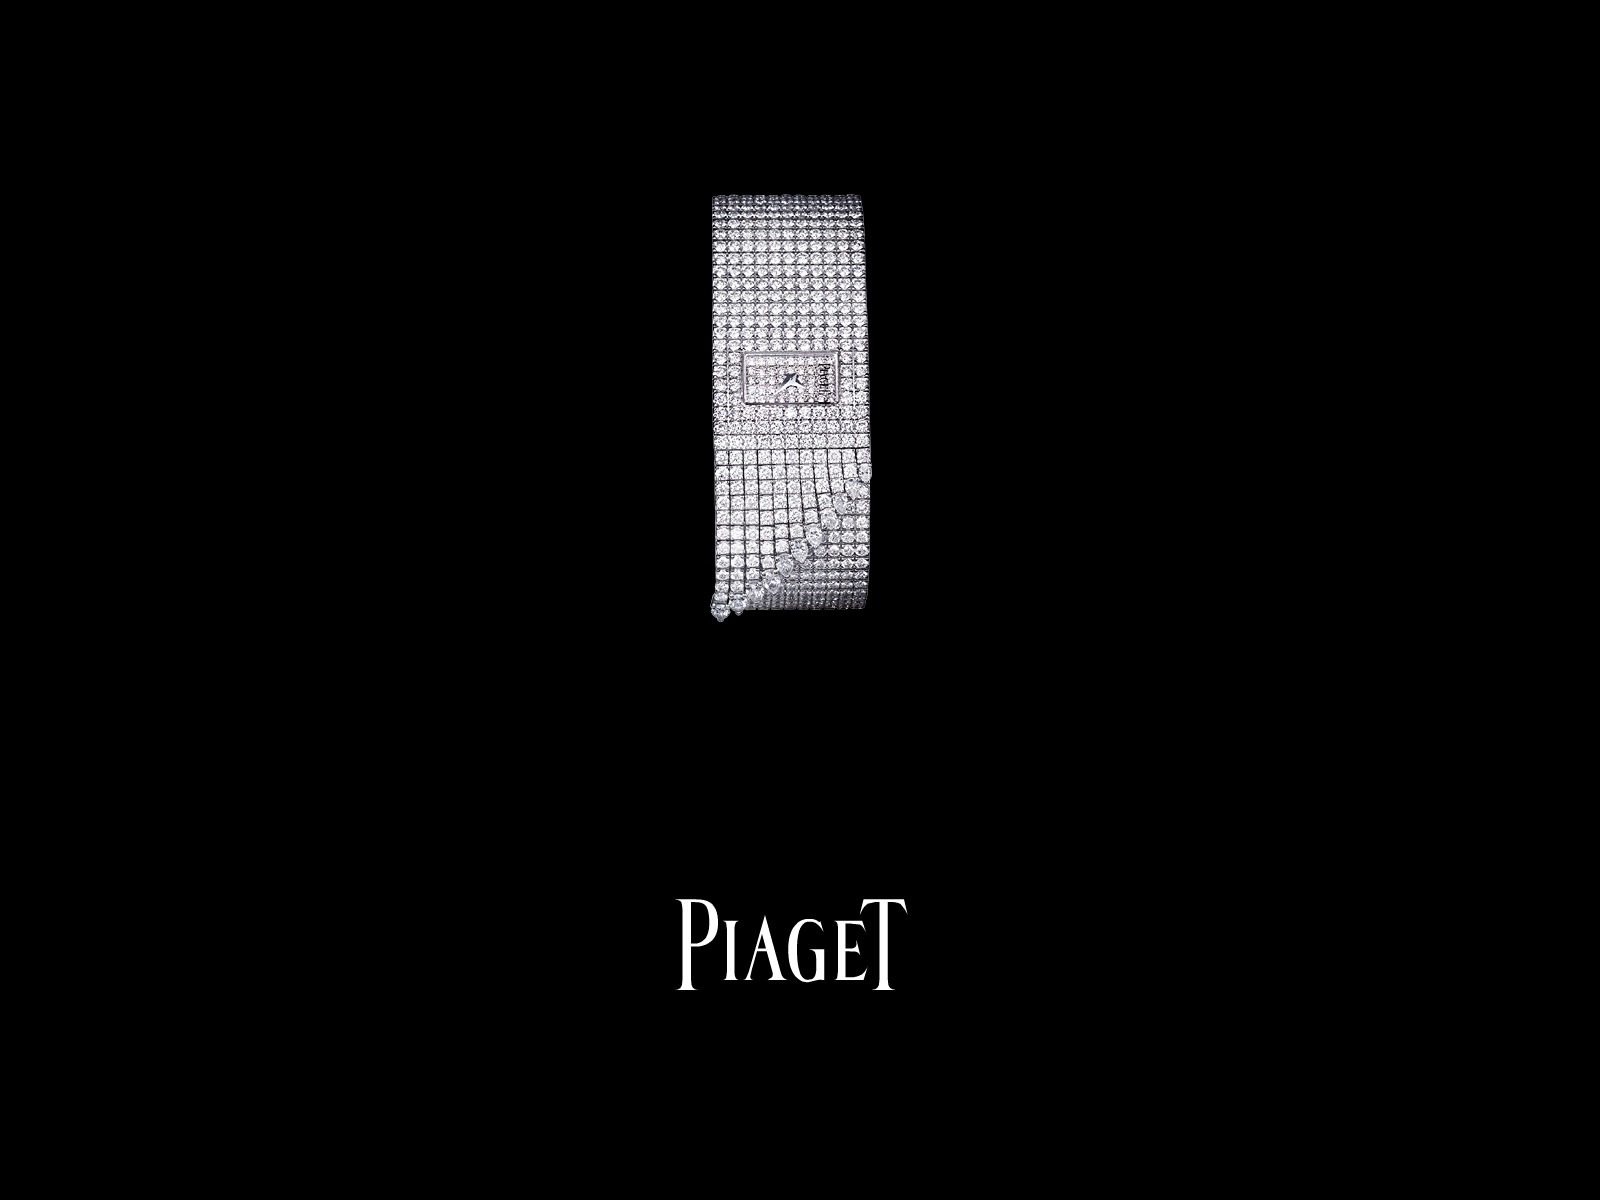 Piaget Diamante fondos de escritorio de reloj (1) #19 - 1600x1200